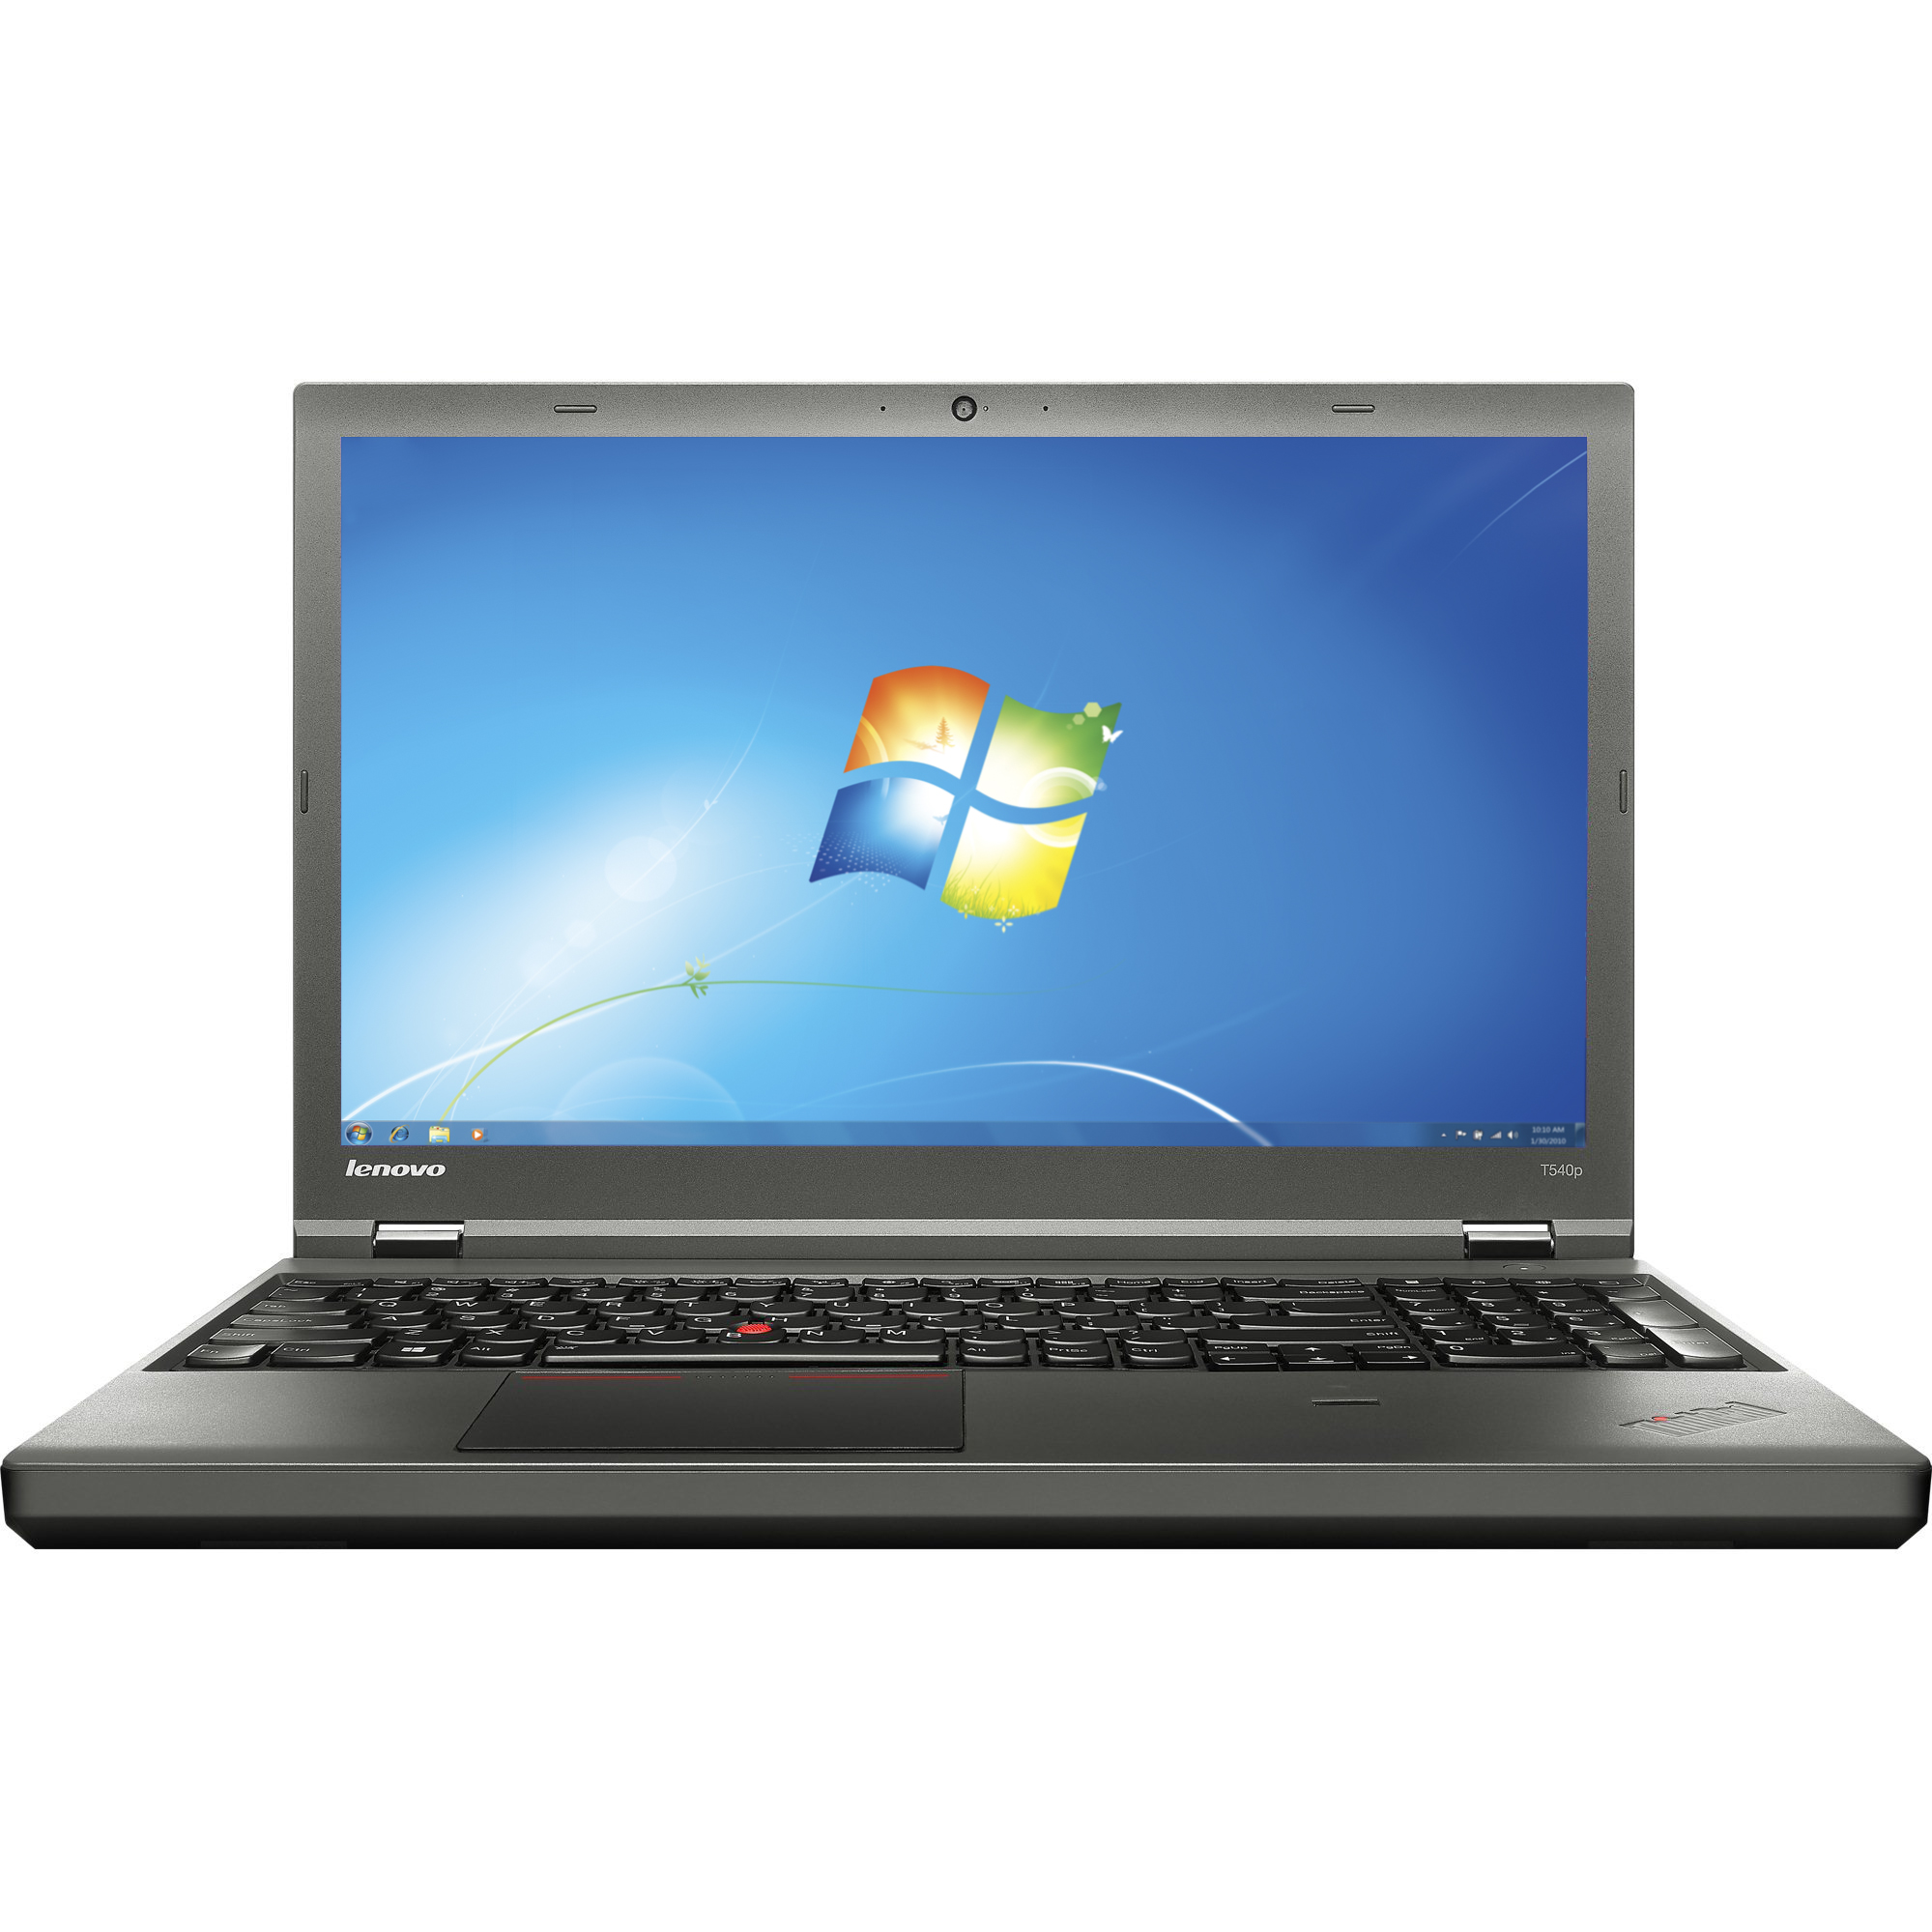 Notebook Lenovo ThinkPad T540p 15.6 Full HD Intel Core i5-4210U RAM 4GB SSD 256GB Windows 7 Pro / 10 Pro Negru